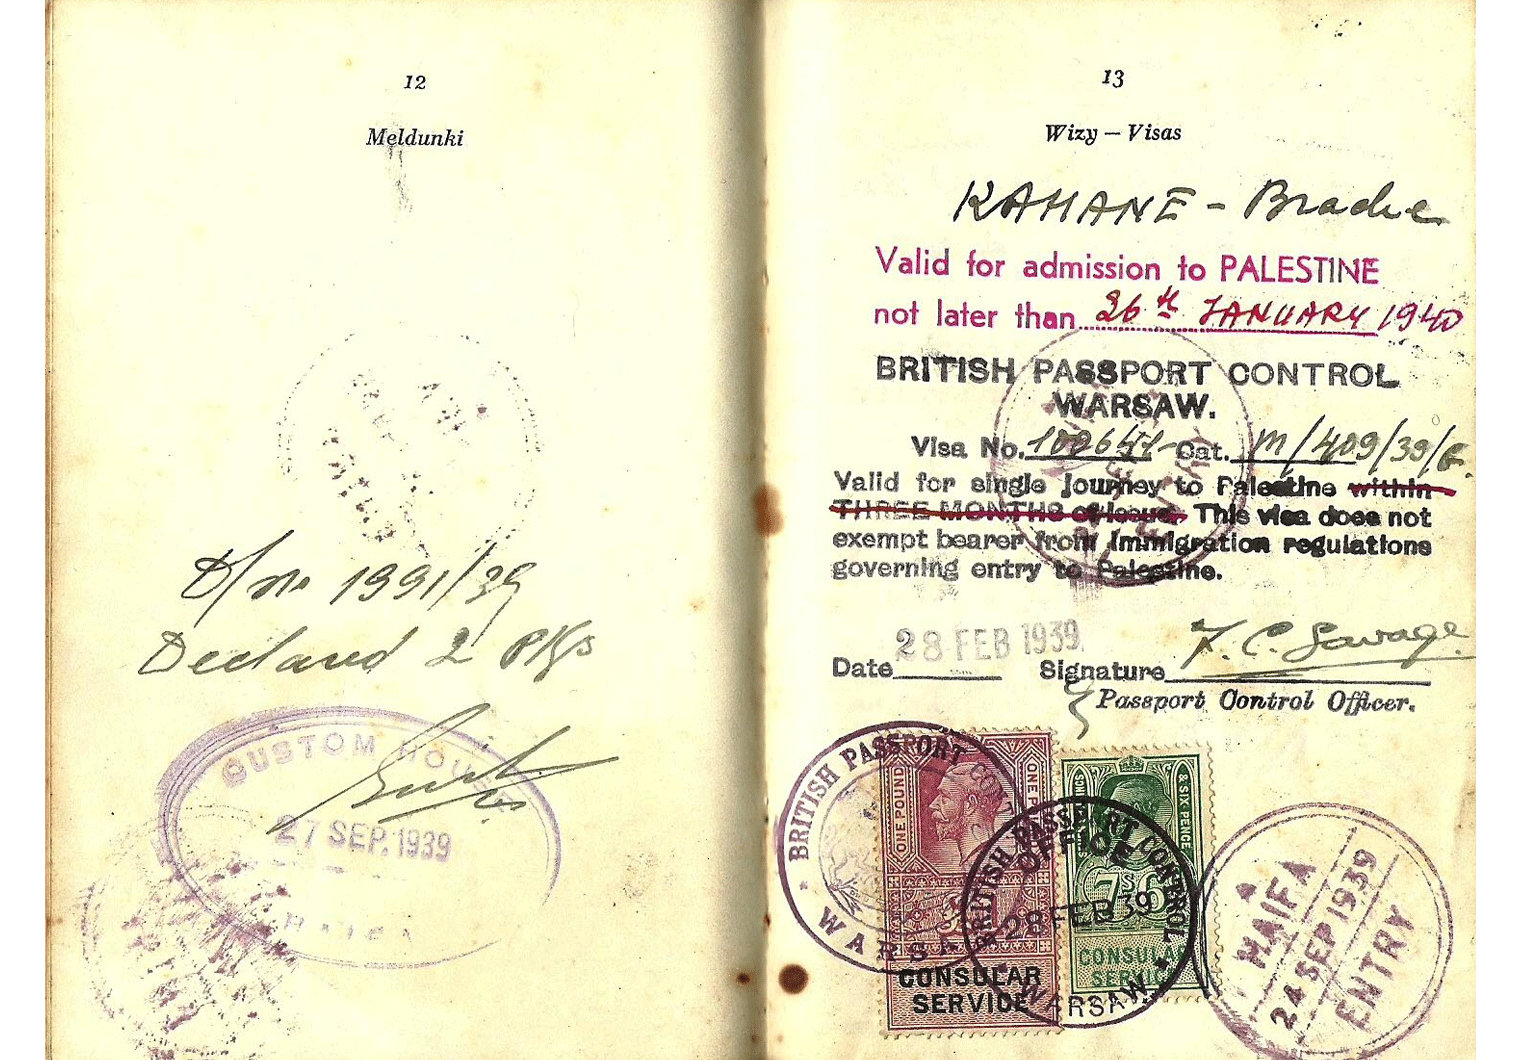 WW2 travel document